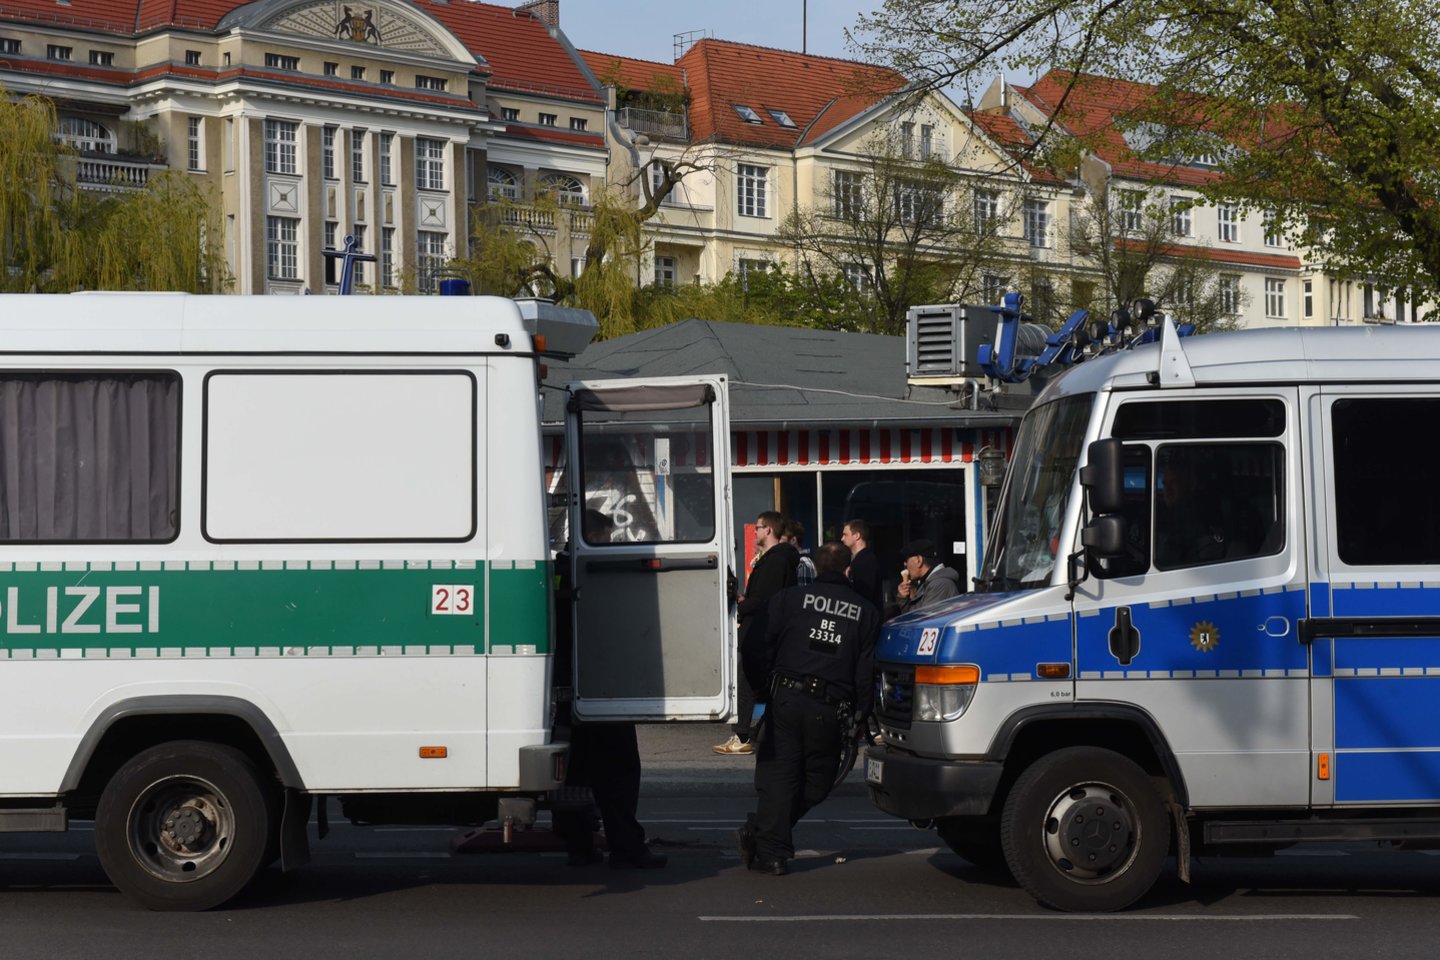  Vokietijos policija sulaikė įtariamąjį neonacių grasinimų byloje.  <br> ZUMA Press/Scanpix nuotr.